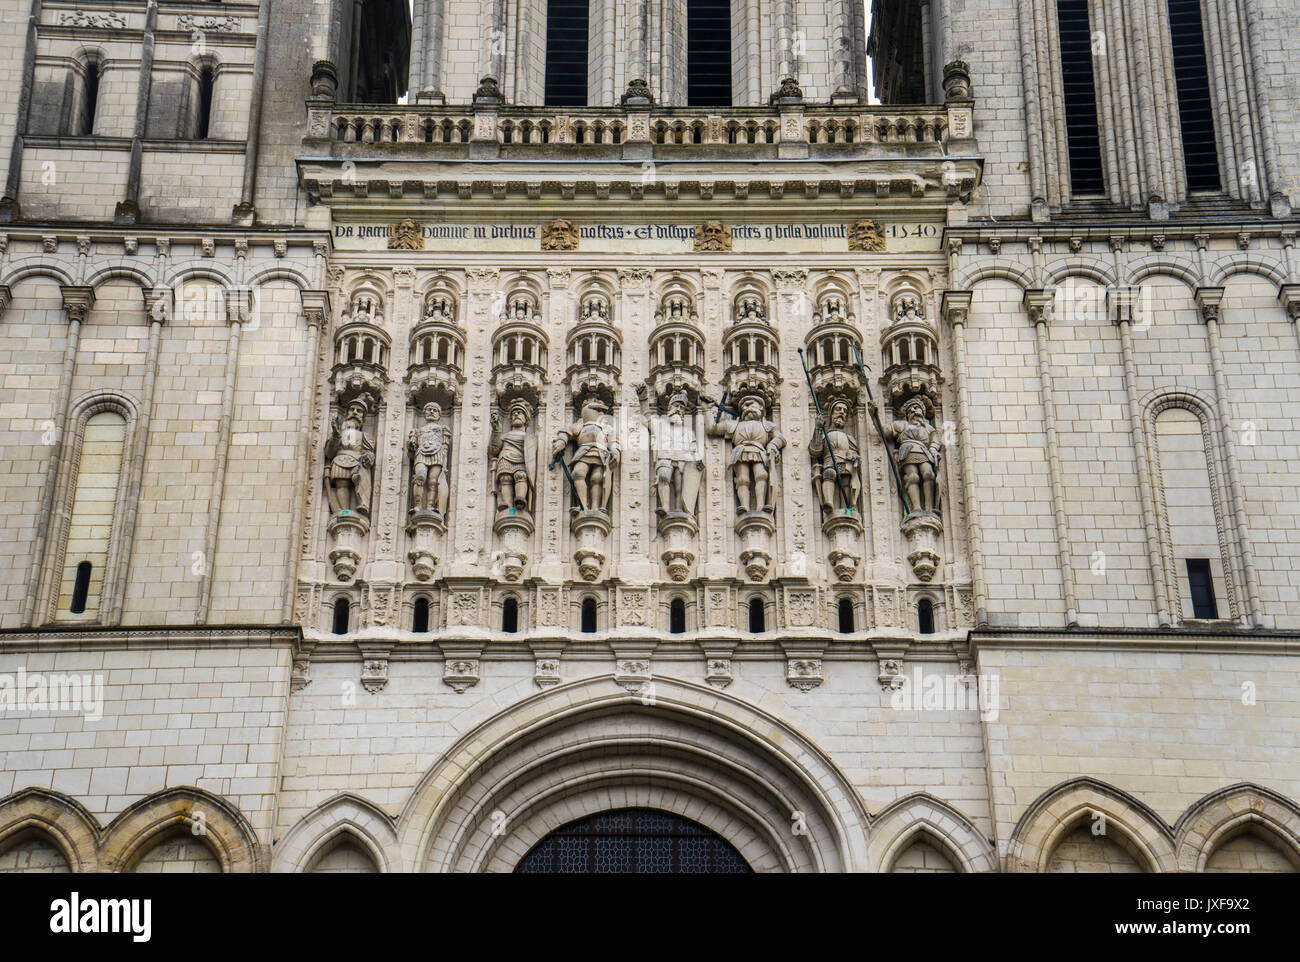 Francia Pays de la Loire, Angers, galleria dei cavalieri in stile romanico e la facciata in stile gotico della cattedrale di Angers Foto Stock